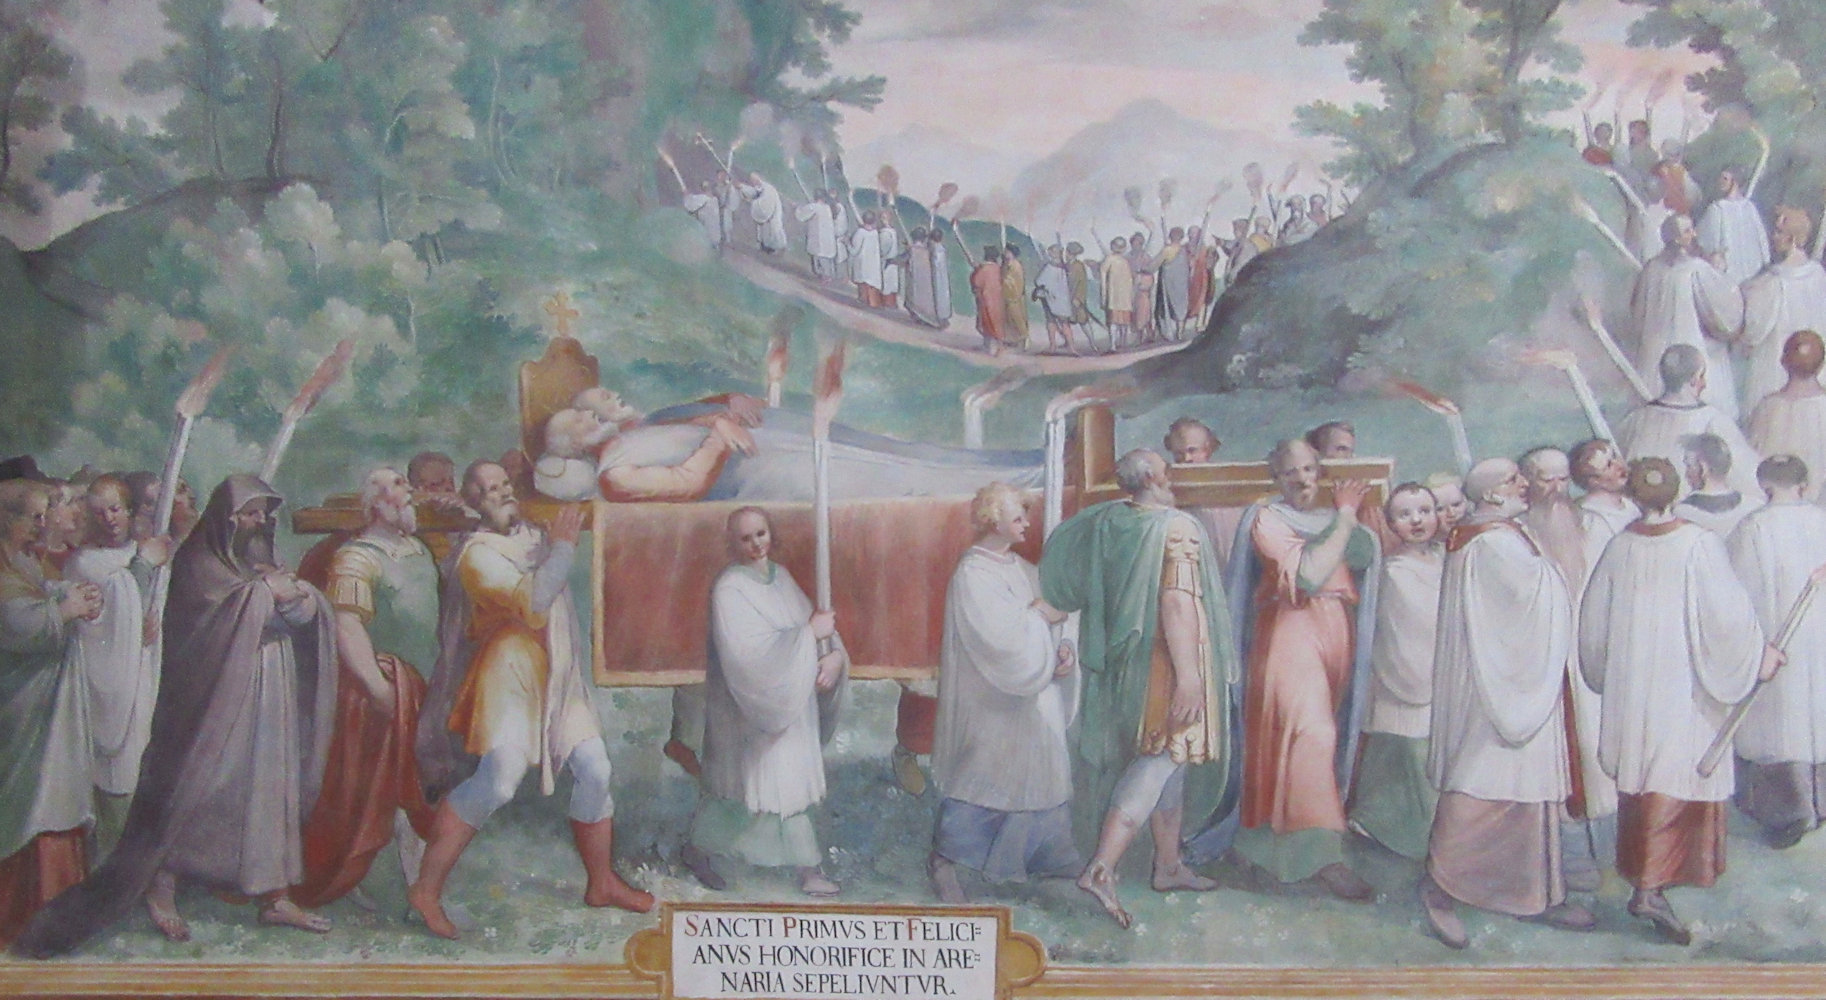 Primus' und Felicianus' Bestattung in einem Felsengrab, Fresko in der Primus und Felicianus geweihten Kapelle der Kirche San Stefano Rotondo in Rom